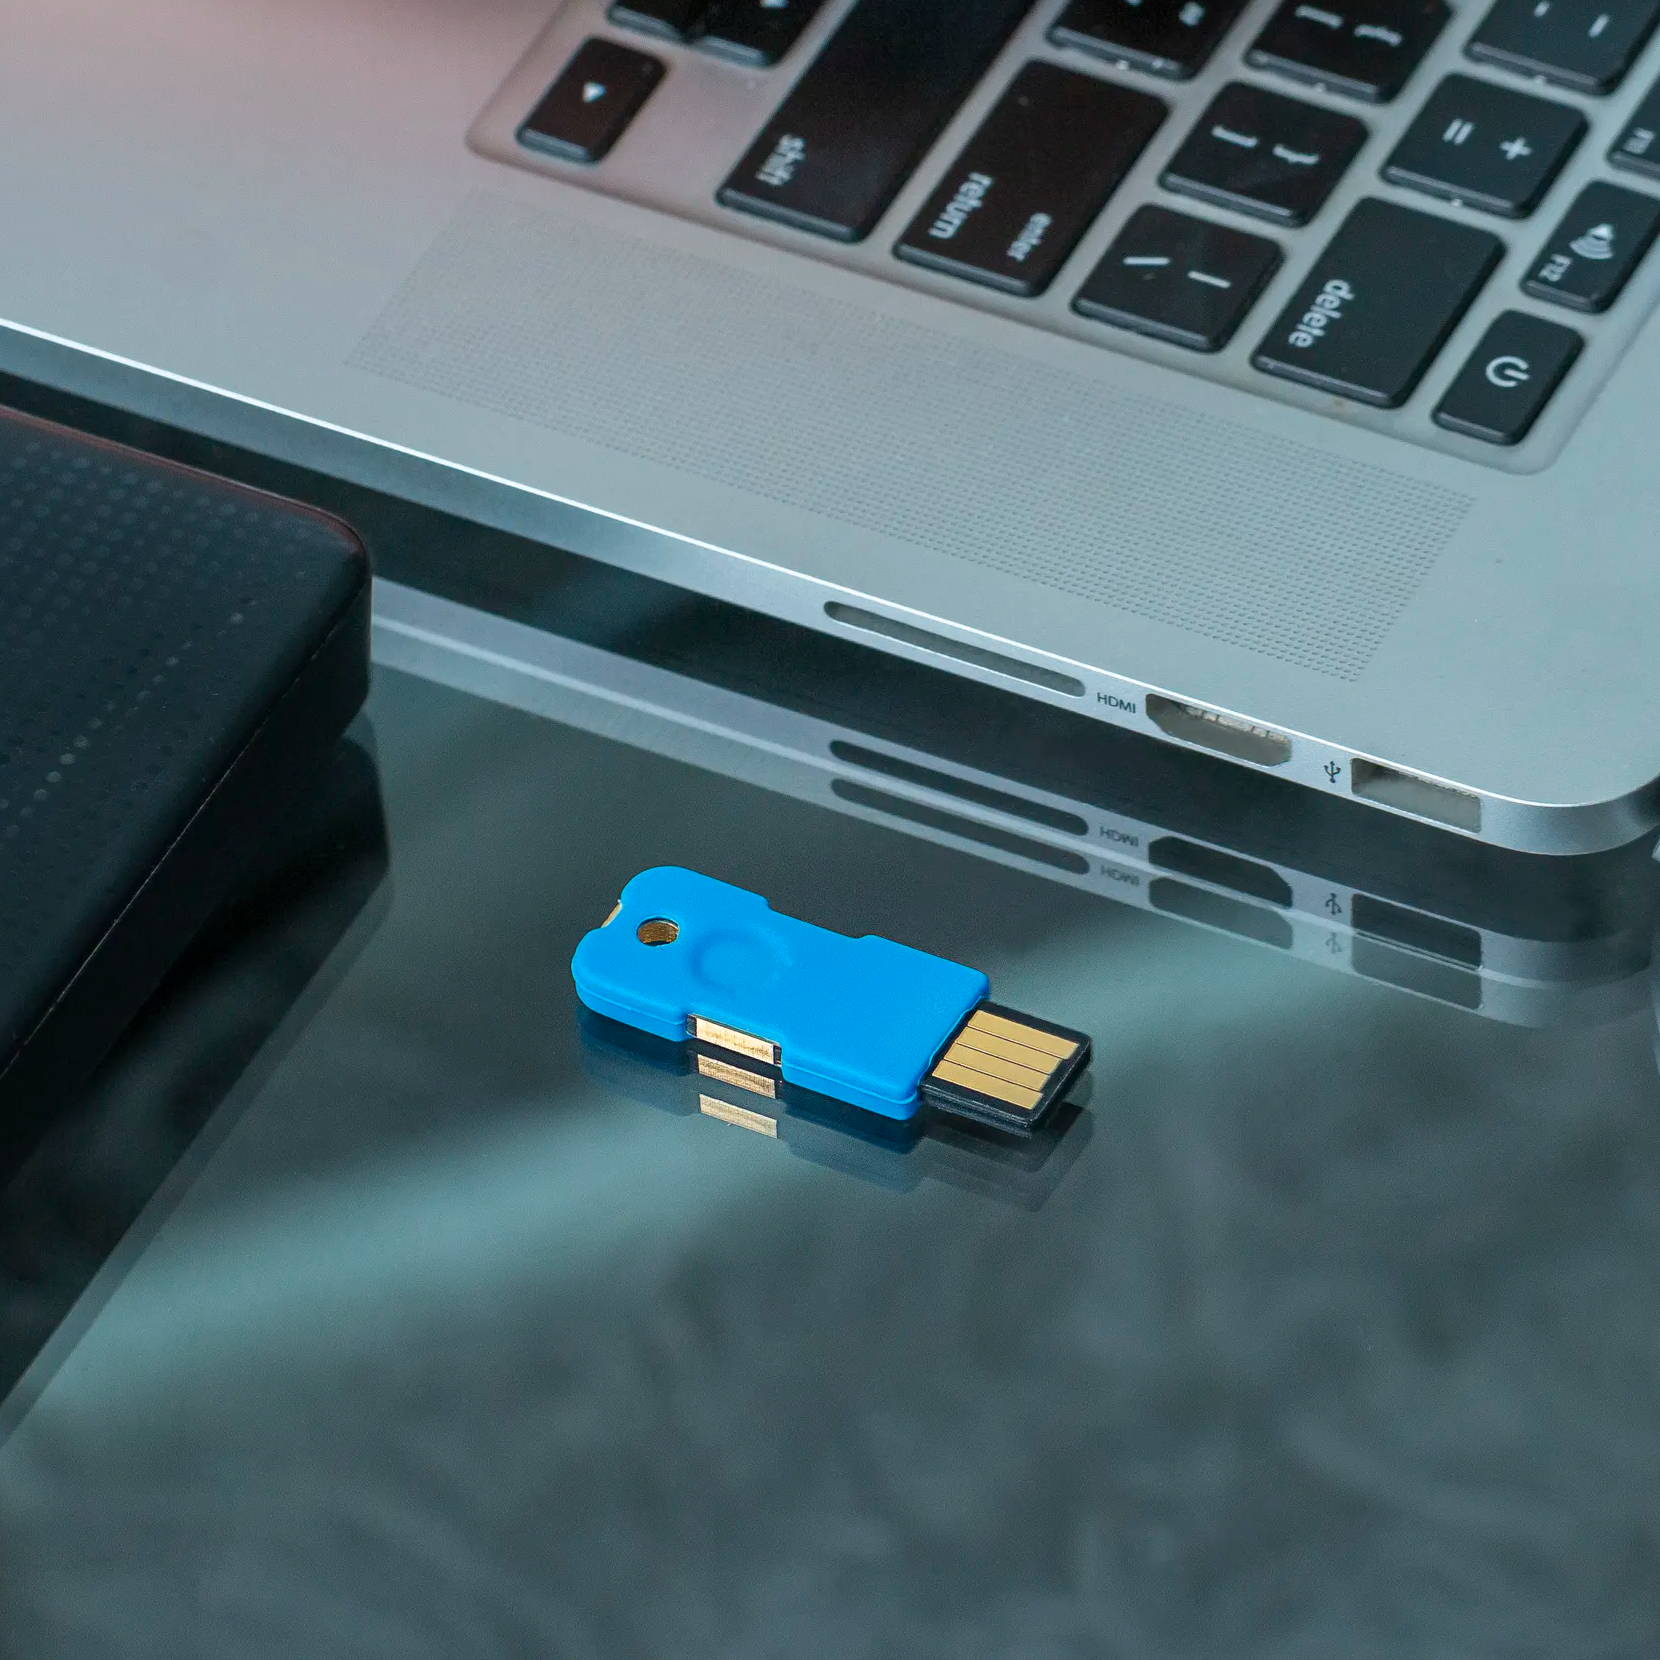 ADAPTADOR USB 3.1 TIPO C A MICRO USB FON